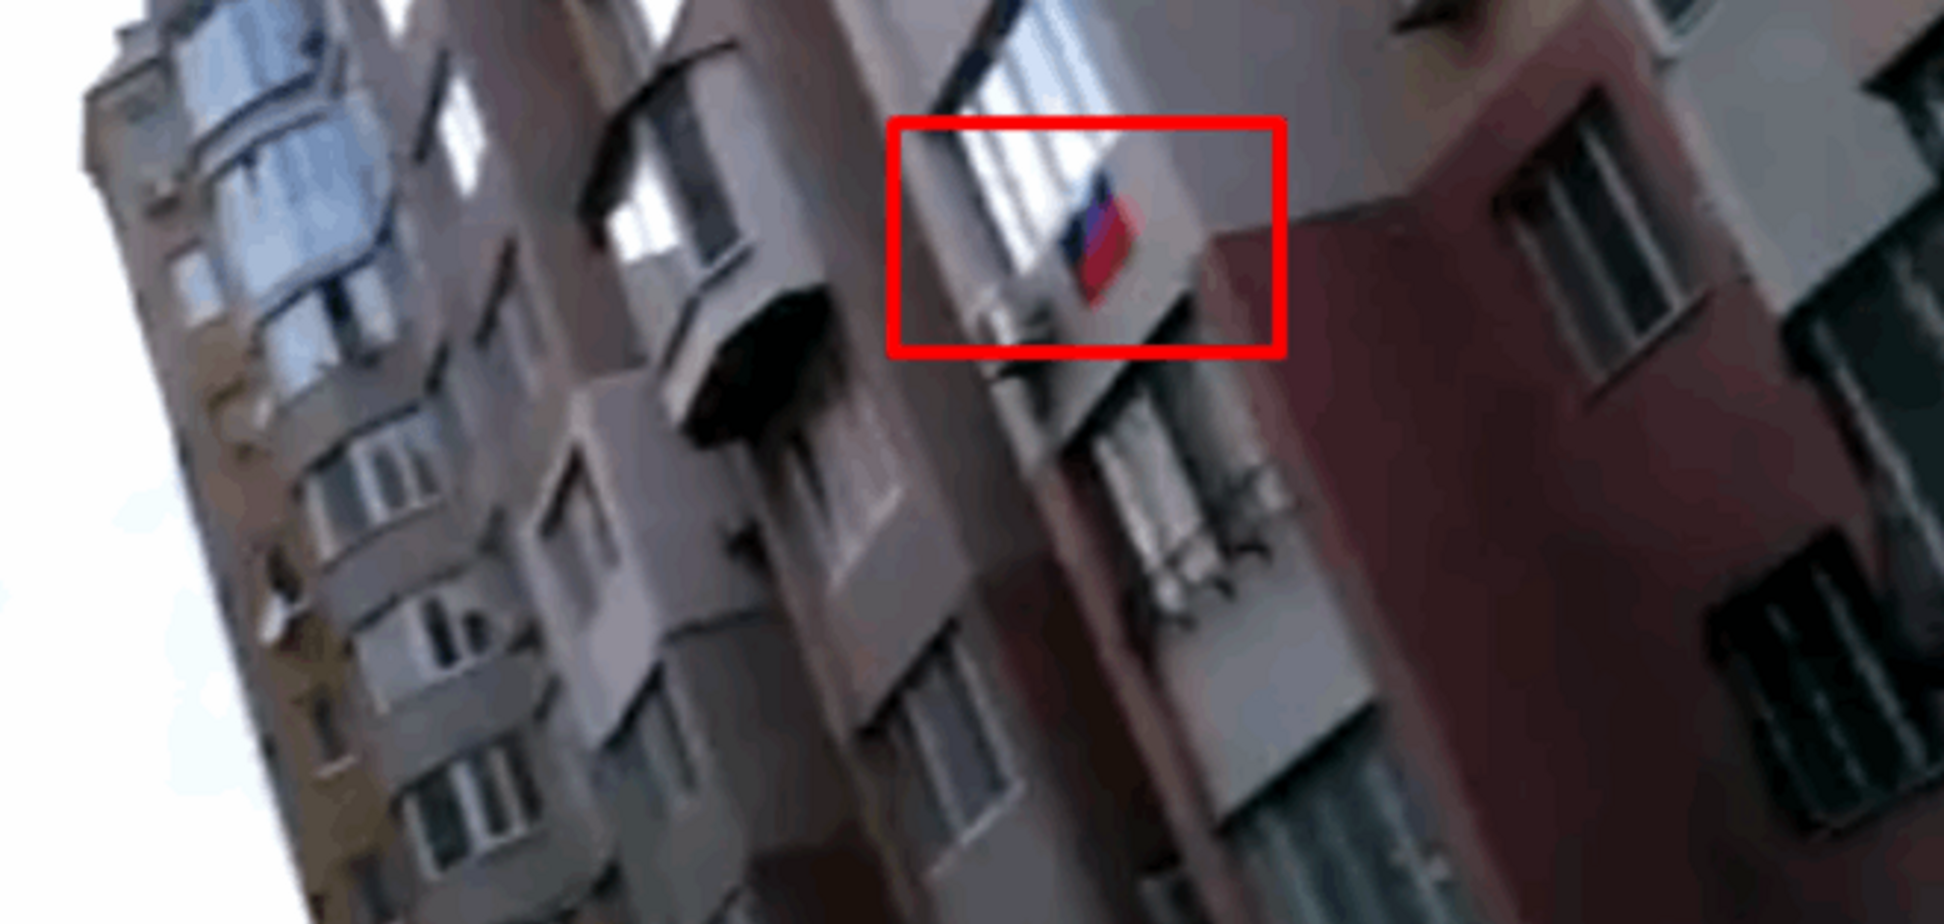  В Одессе в День Победы вывесили российский флаг: видеофакт